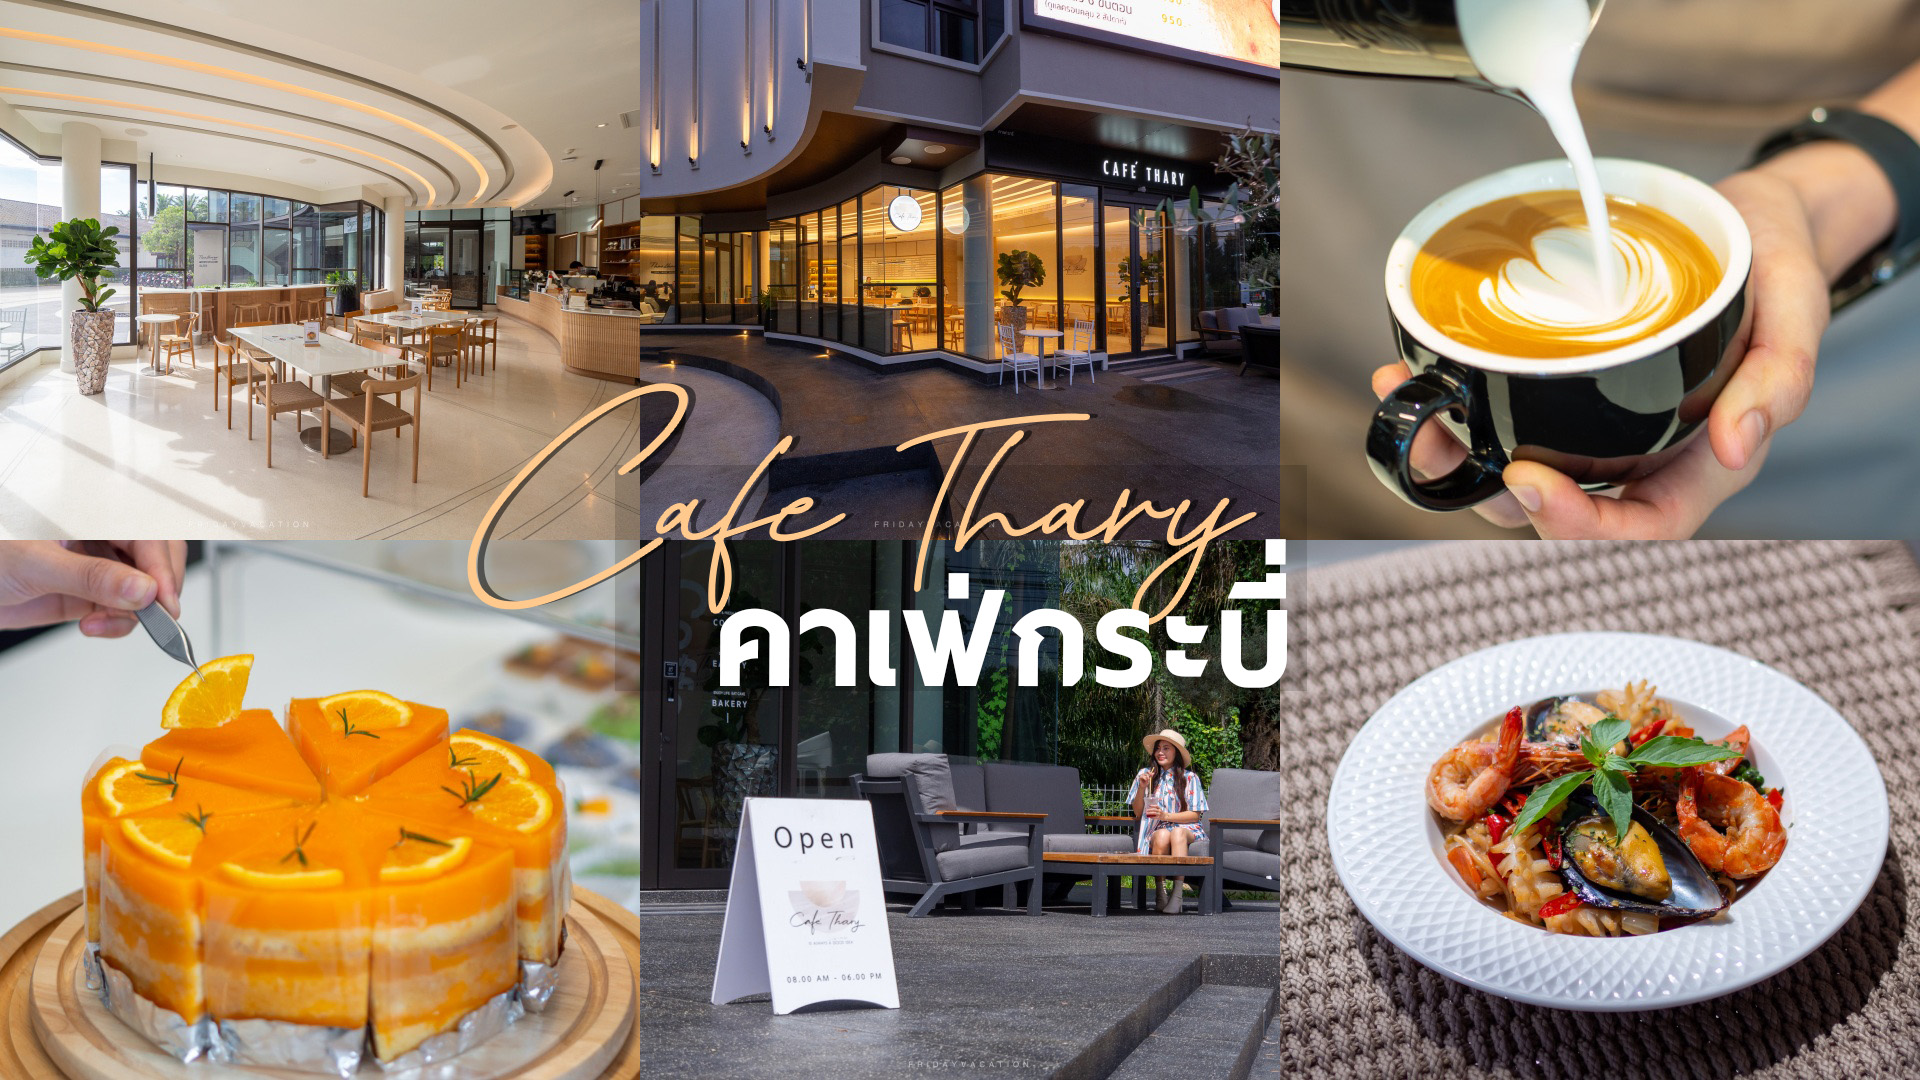 Cafe Thary คาเฟ่กระบี่ ดีไซน์สวย นั่งสบาย โซนสนามบิน มีเมนูอาหาร เครื่องดื่ม ขนมครบ จบในร้านเดียว